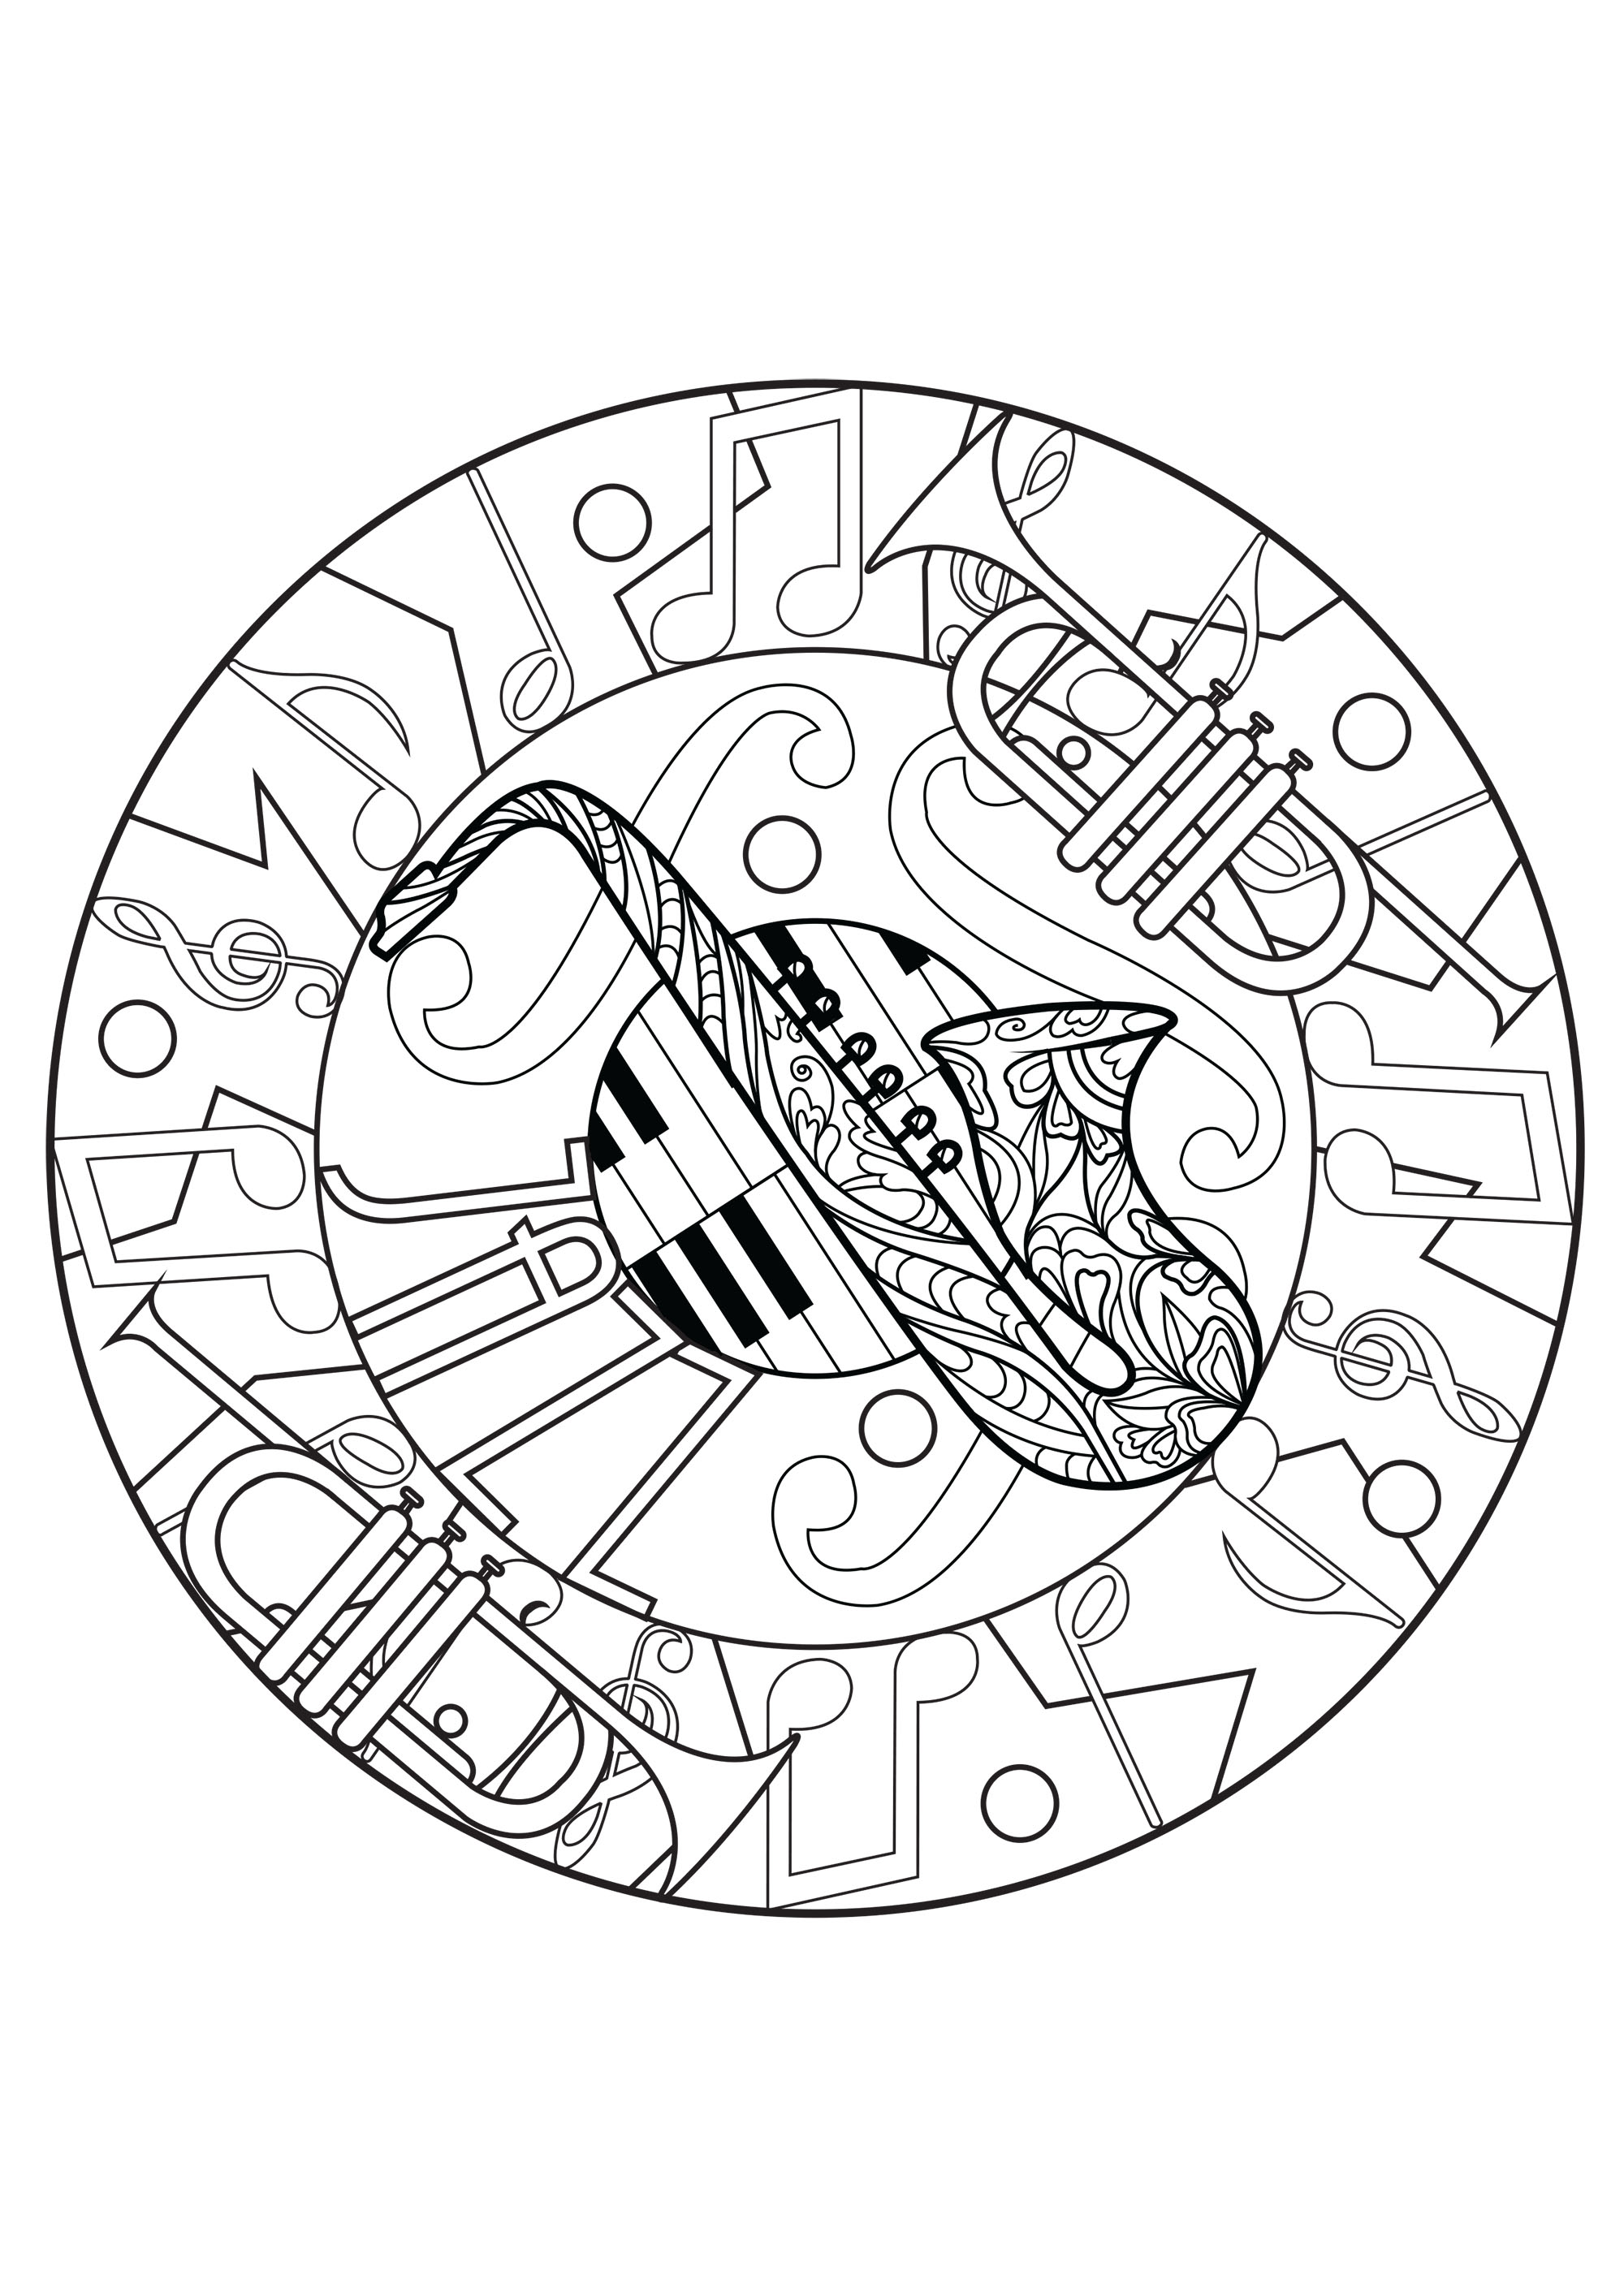 Mandala melódico compuesto por un saxofón, trompetas y teclas de piano. Una hermosa creación que evoca la magia de la música jazz y sus ritmos pegadizos.
